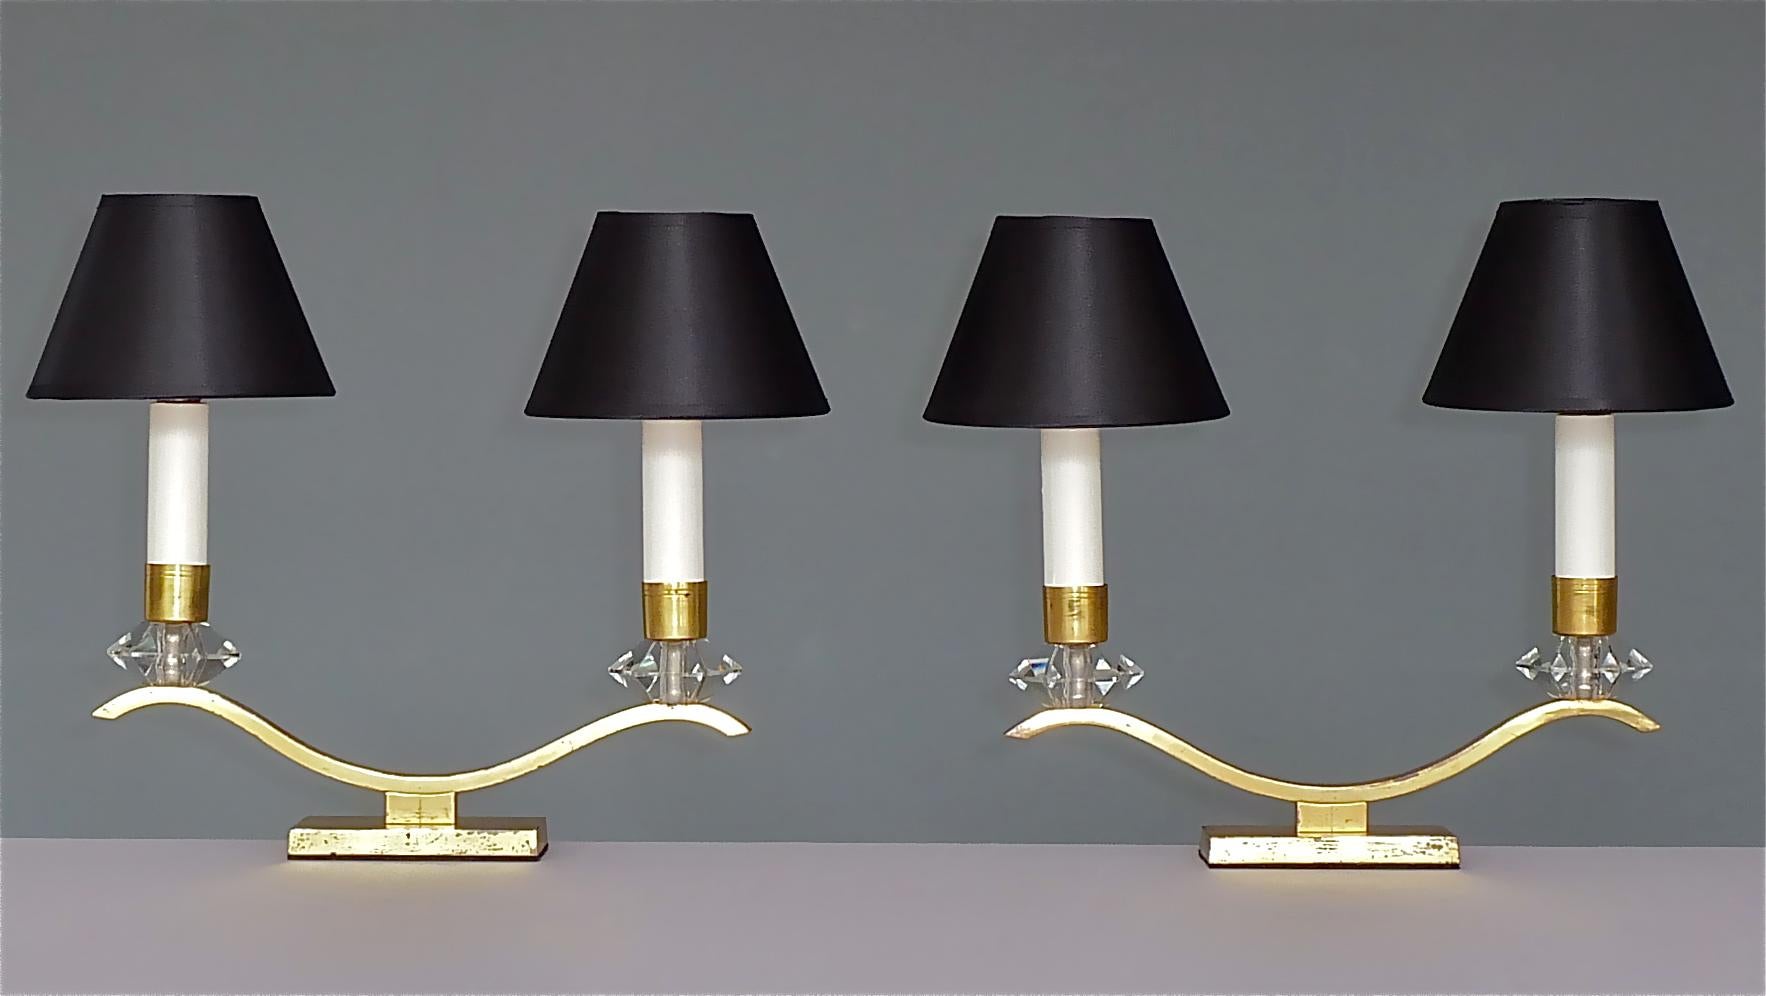 Elégante paire de lampes de table Art déco françaises dans le style de la Maison Baguès et Leleu, France, vers 1930-1940. Les lampes de table à deux bras sont en laiton avec une belle patine vieillie caractéristique, d'étonnants carbouchons /